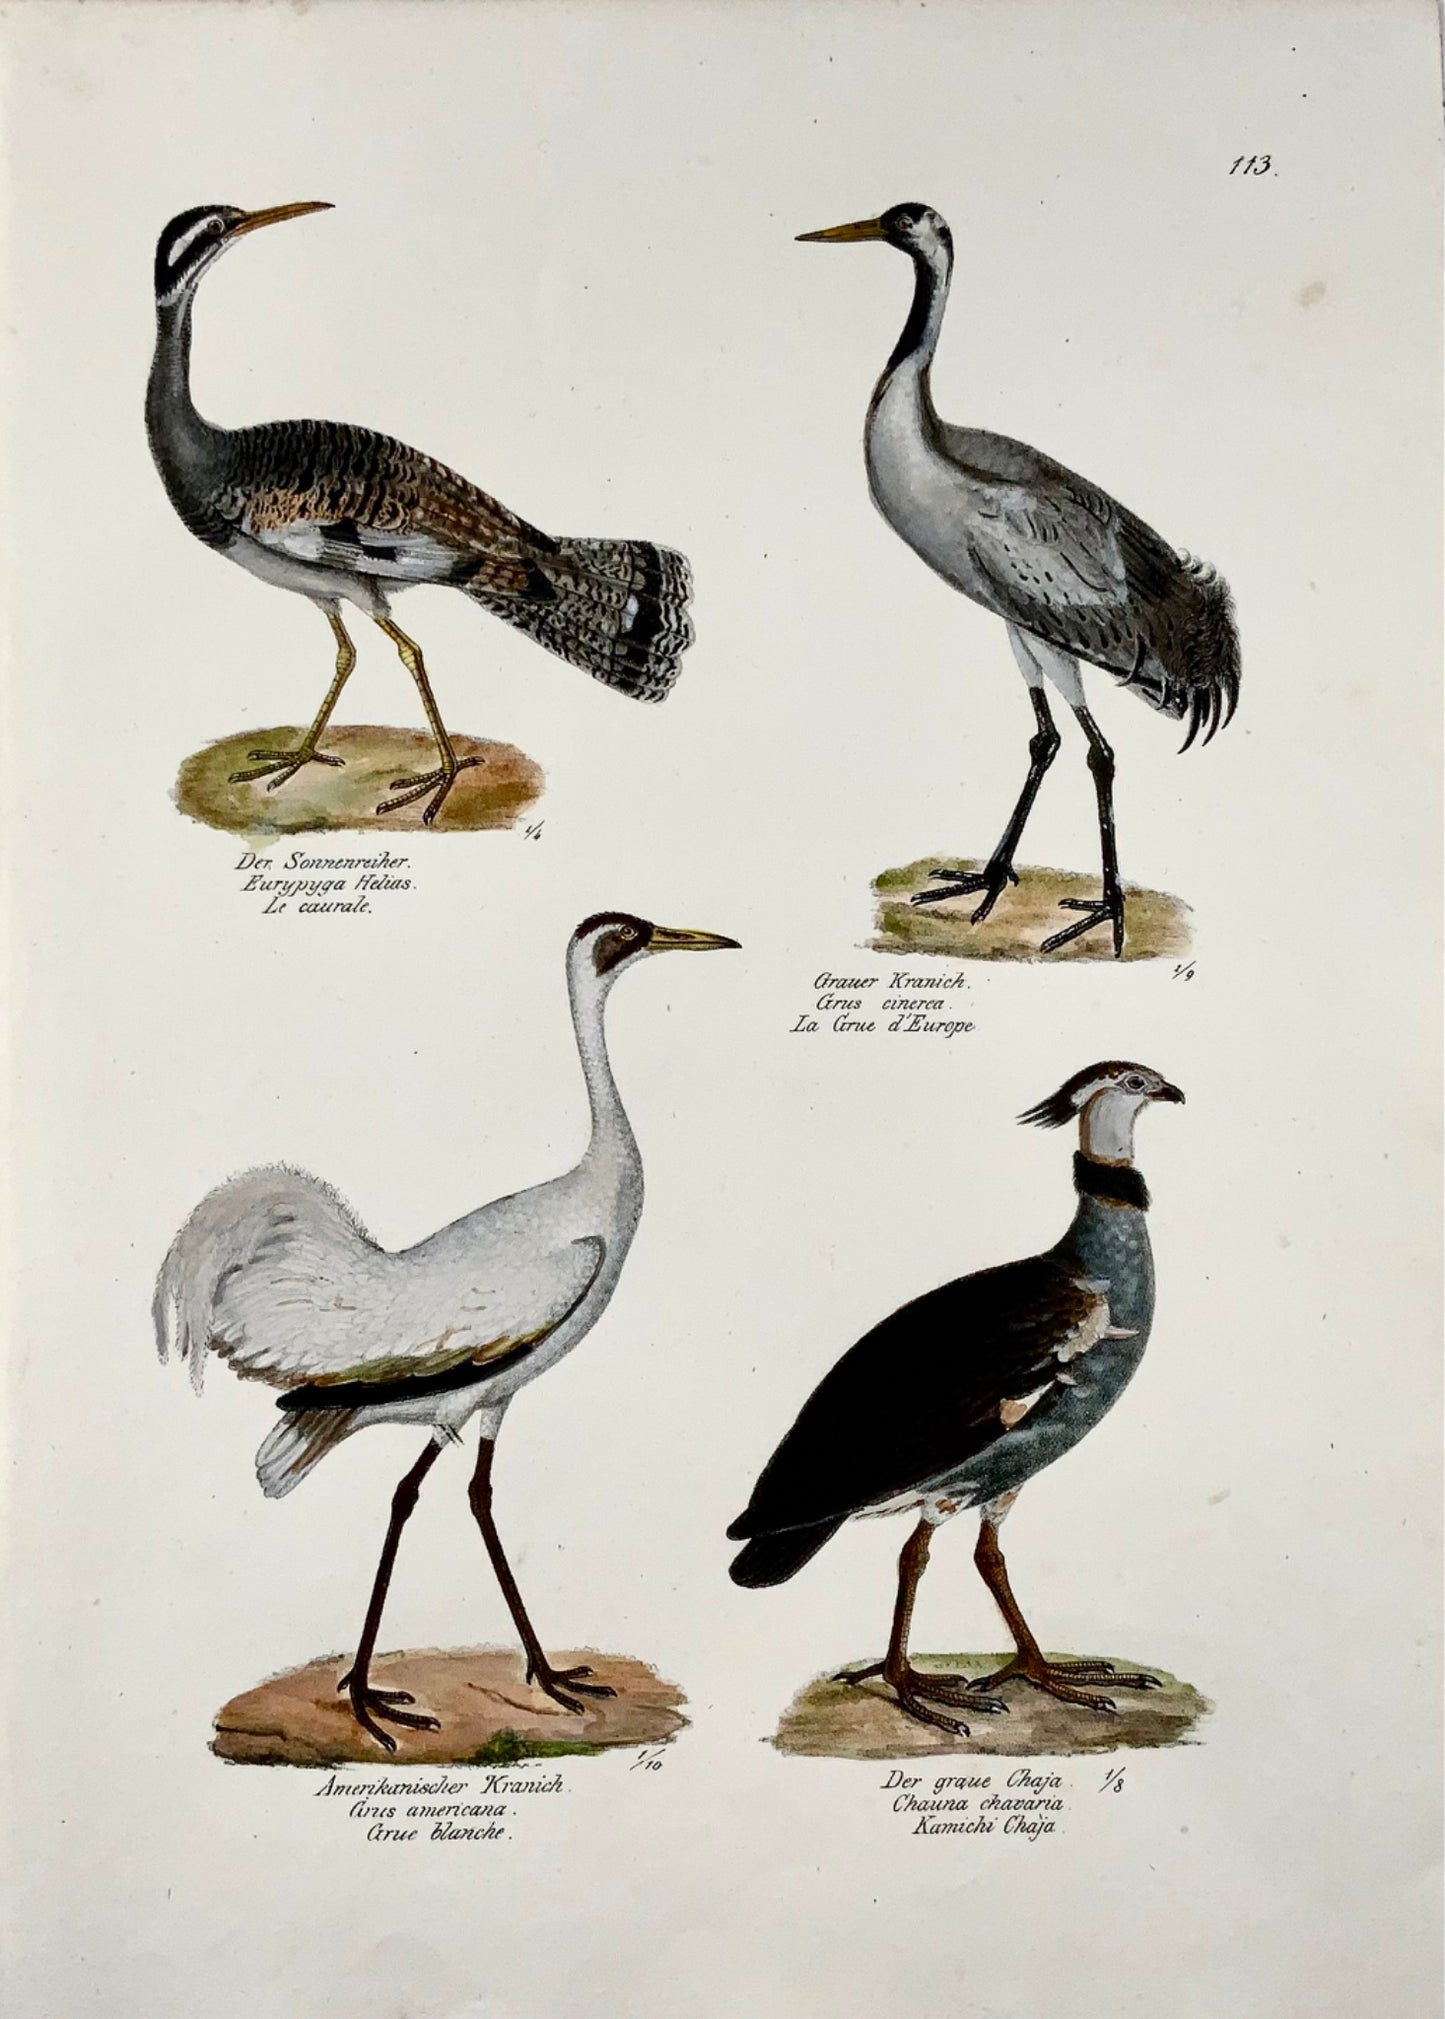 1830 Grues, Ornithologie Brodtmann lithographie folio colorée à la main